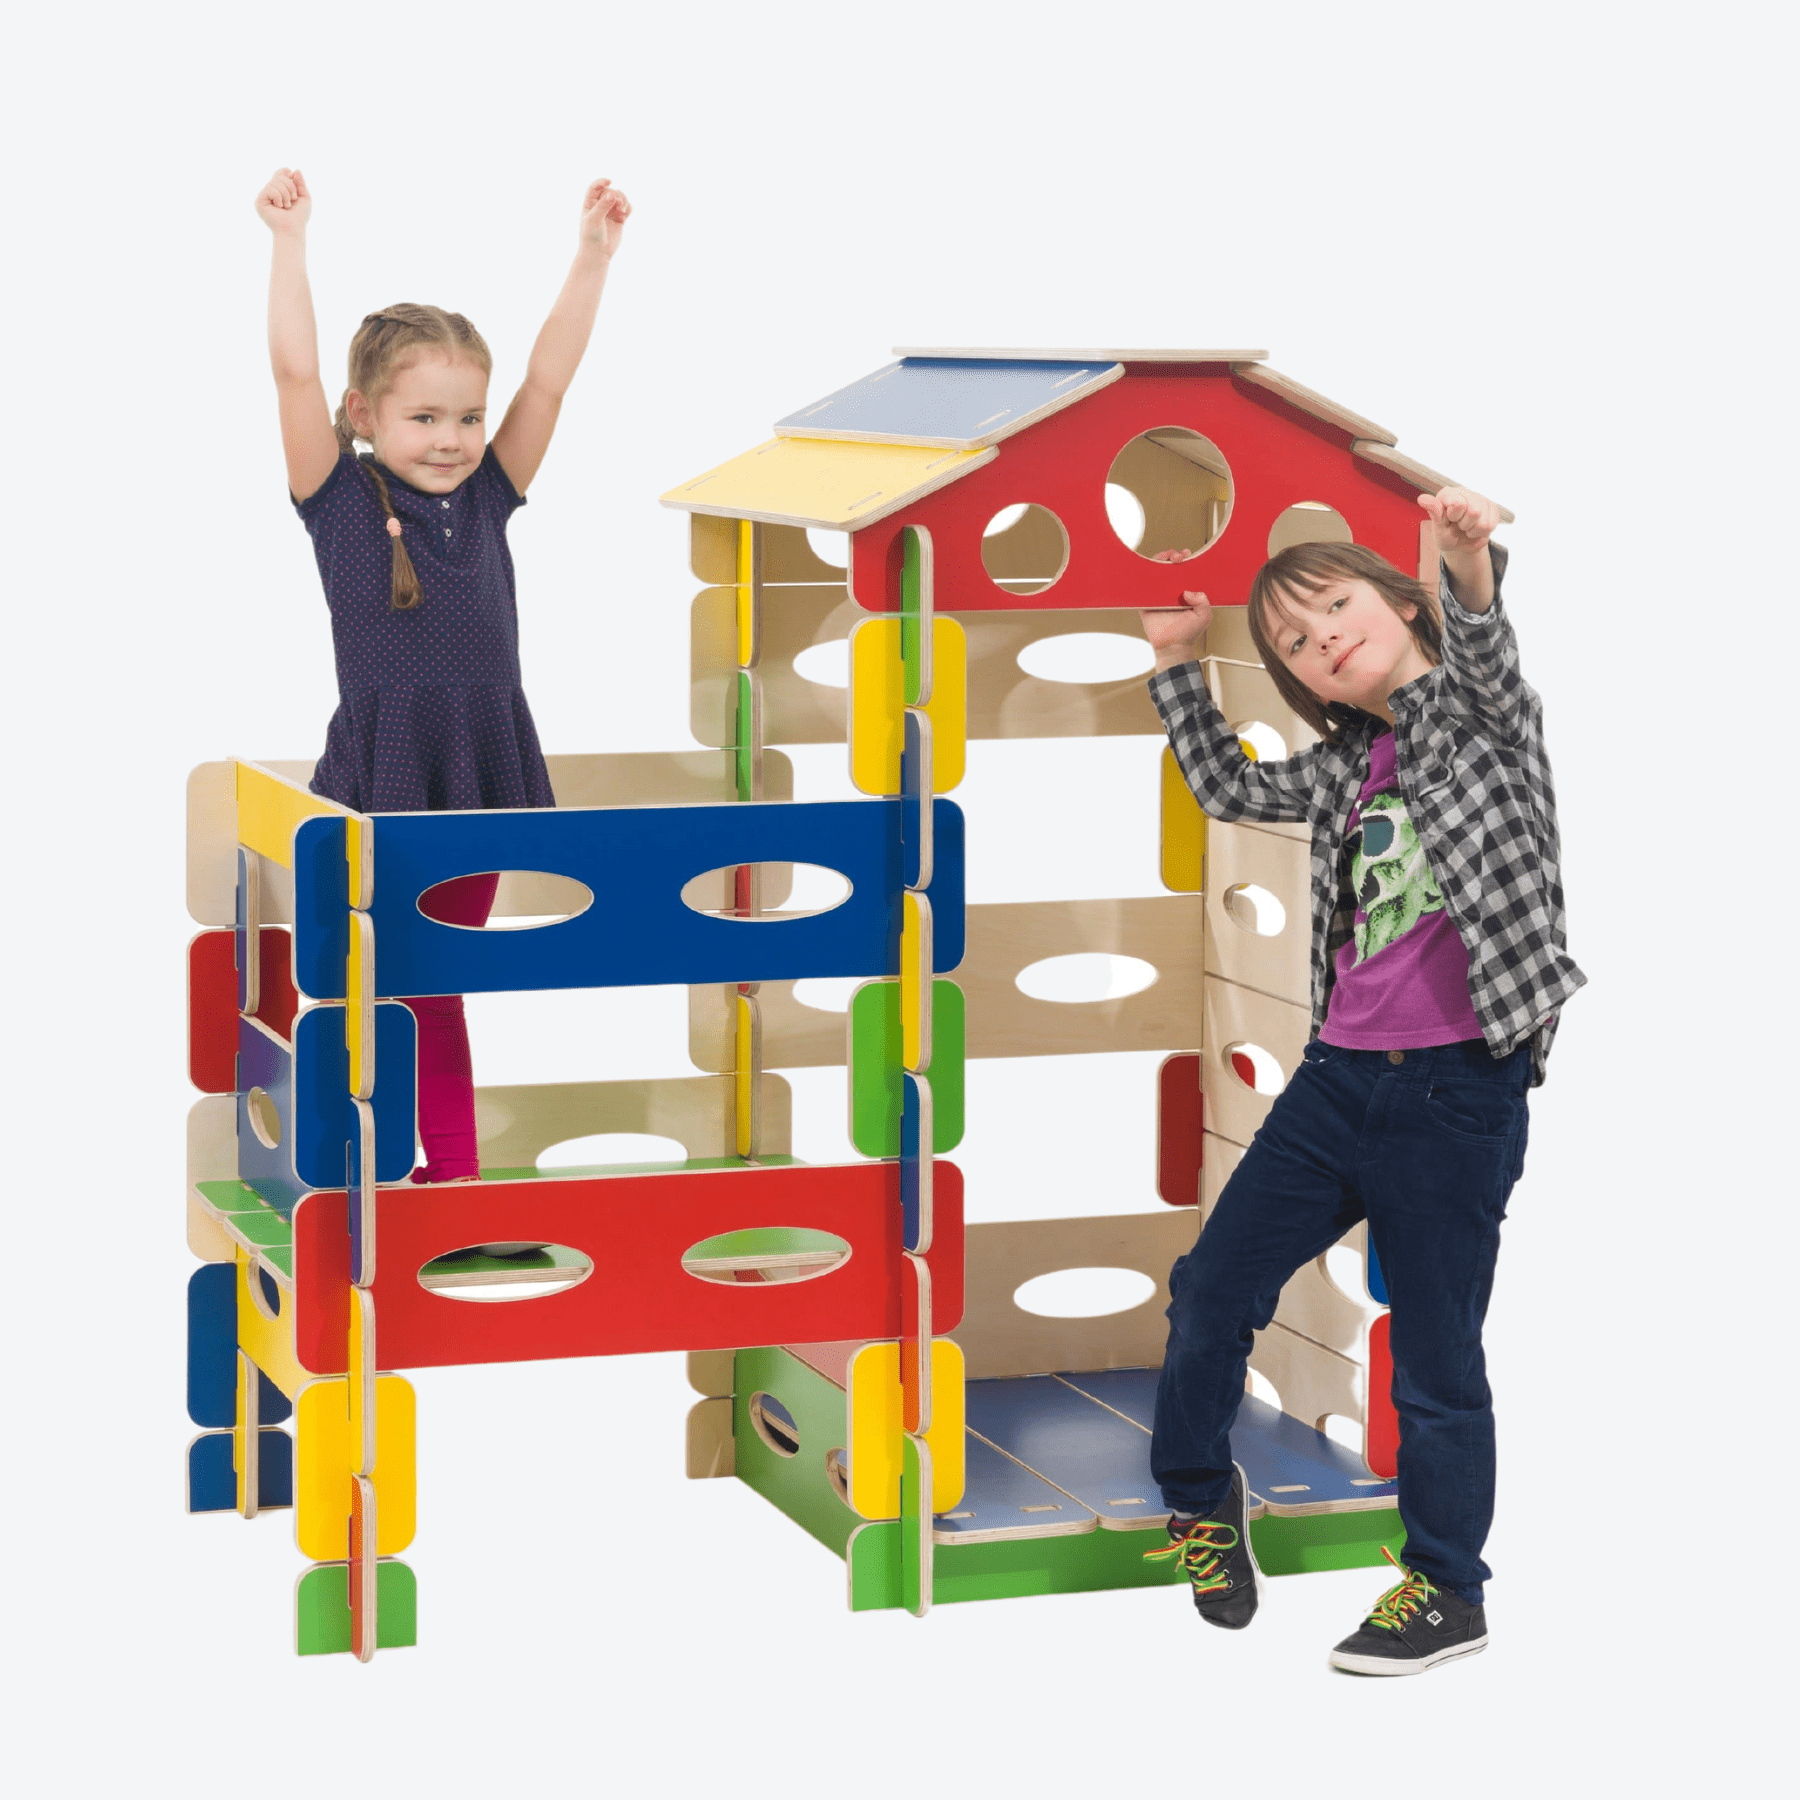 Spielhaus Montessori Kletterturm Bunt - LeoBabys